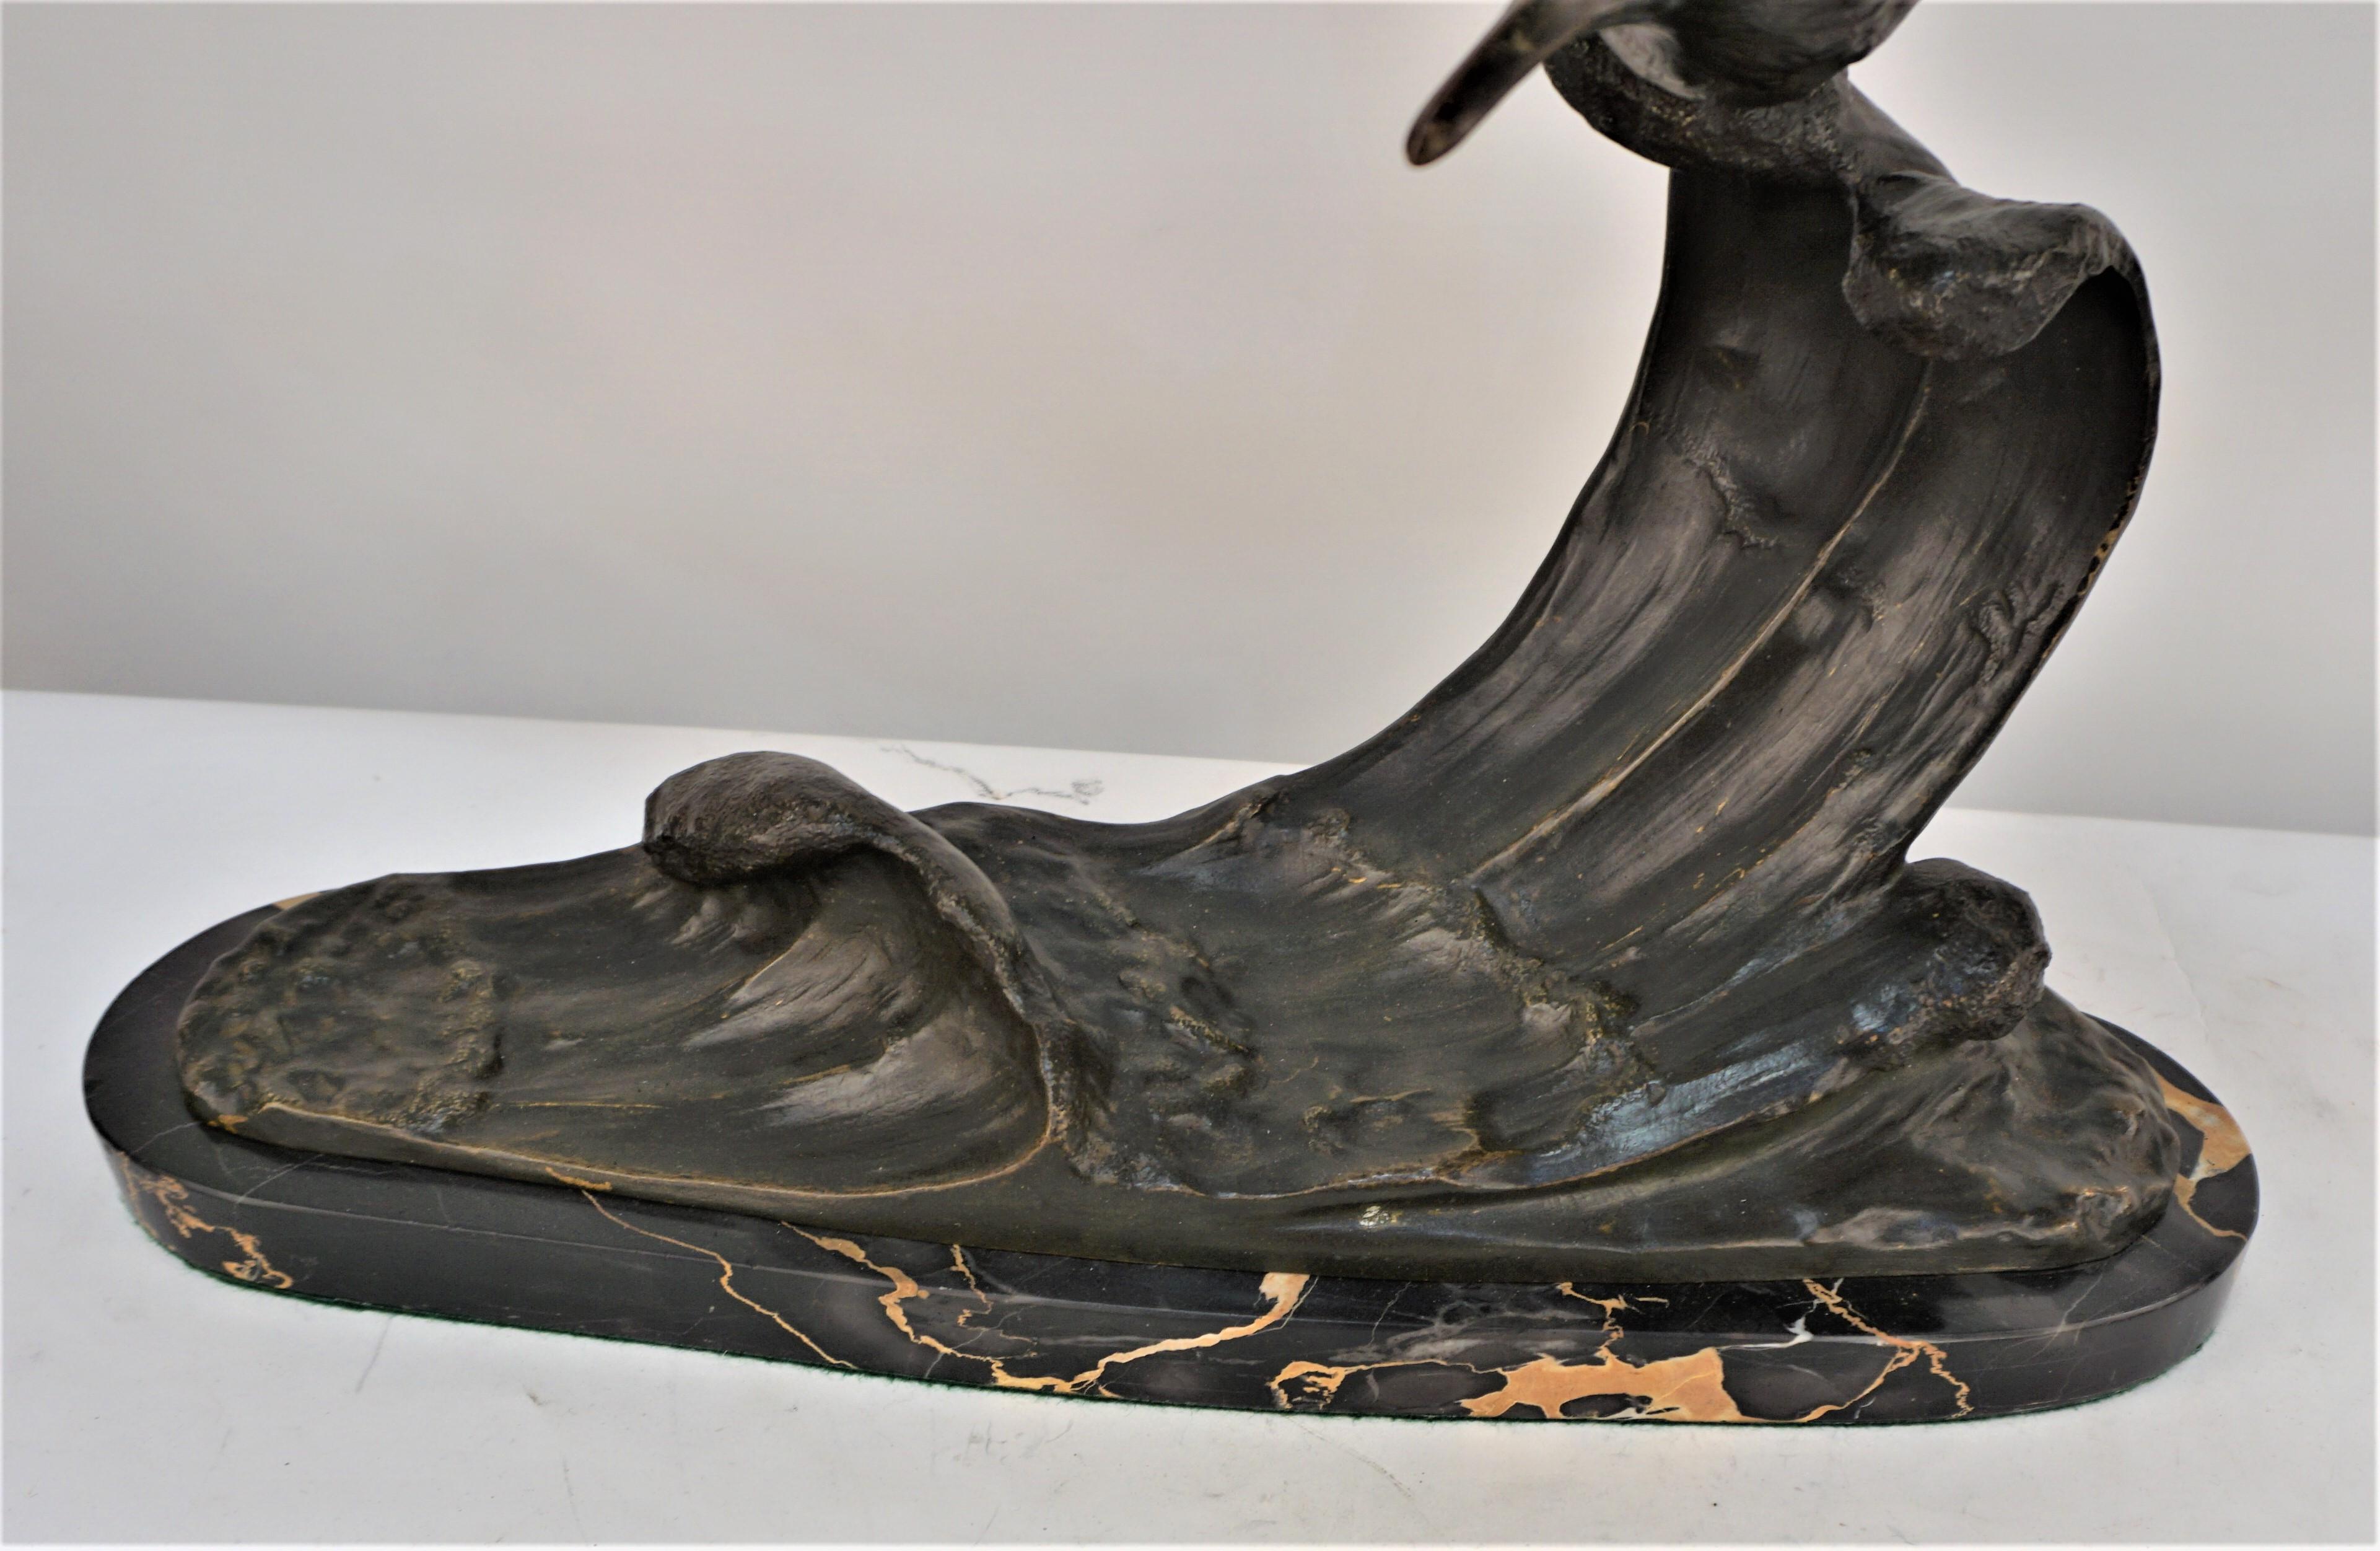 Sculpture en bronze de Seagal volant sur la vague d'eau avec base en marbre. 

